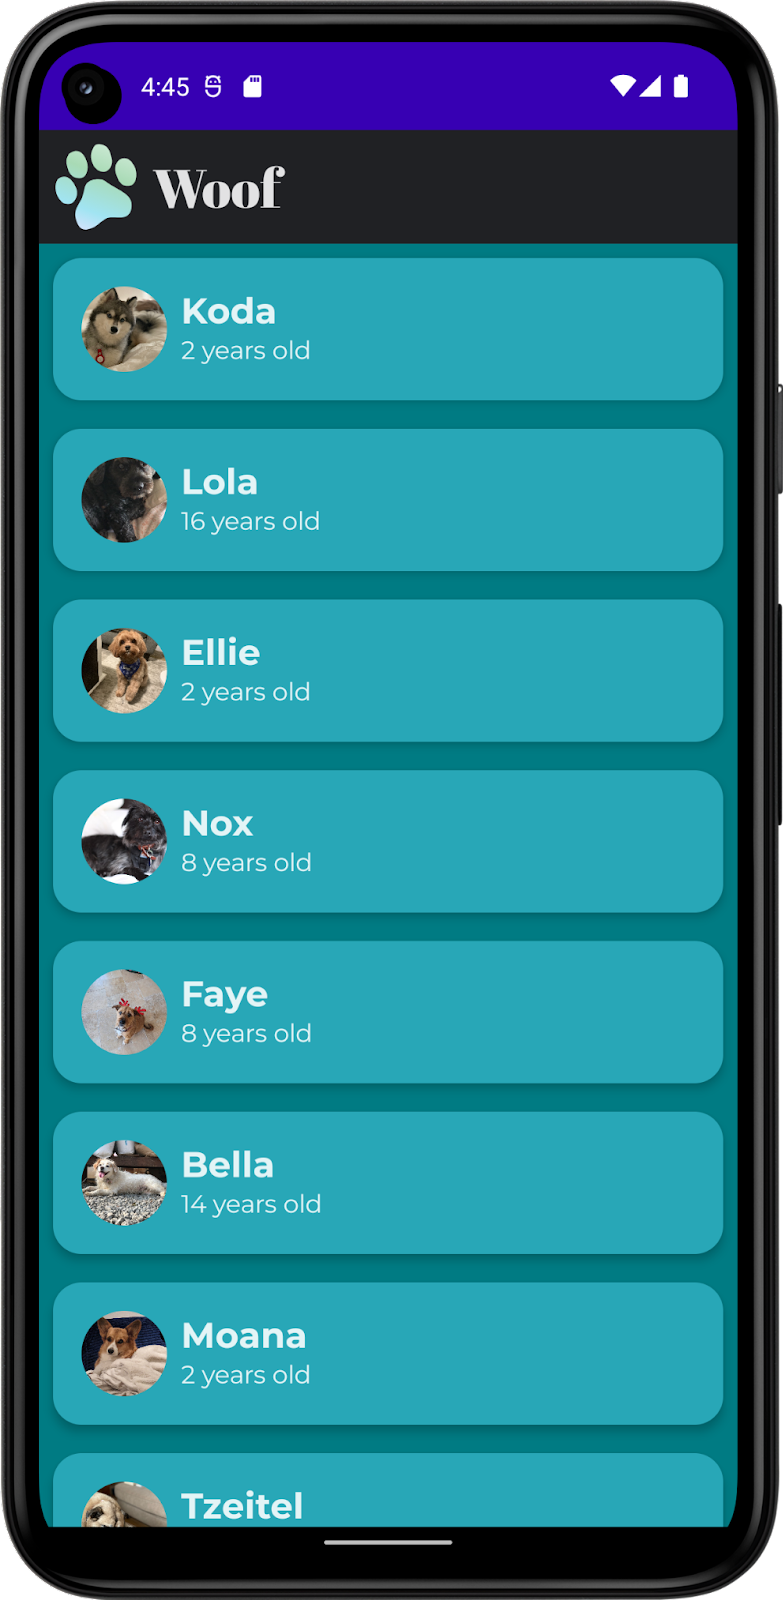 Esta imagem mostra um app com uma lista de cachorros, incluindo nomes, fotos e idades. Ele inclui cores, formas e tipografia personalizadas, além de uma barra na parte de cima. O app mostrado no modo escuro.